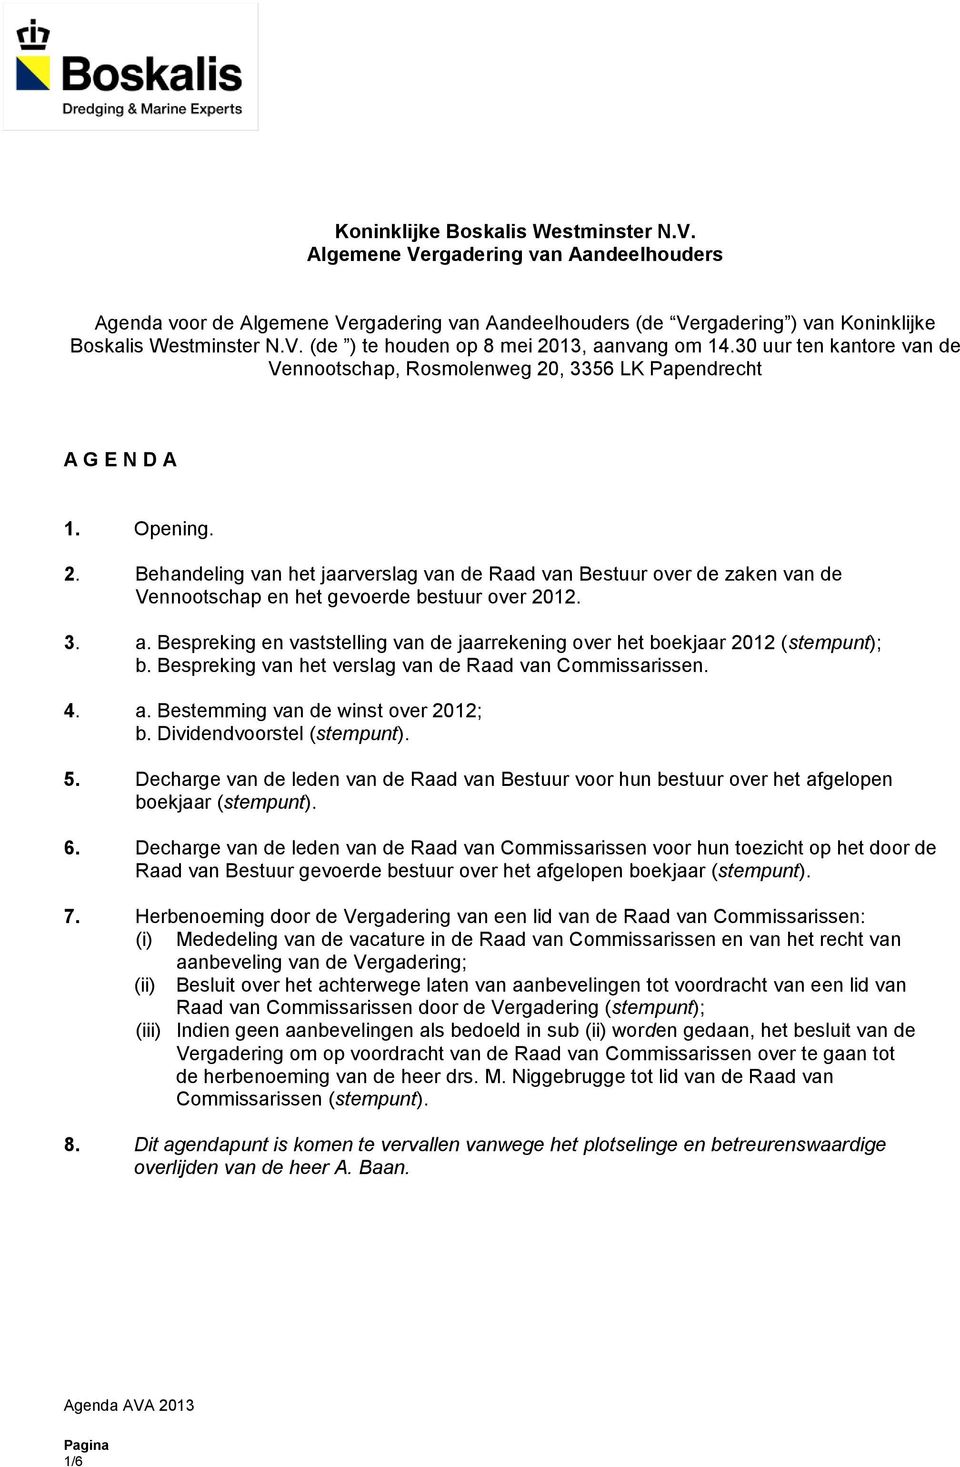 3. a. Bespreking en vaststelling van de jaarrekening over het boekjaar 2012 (stempunt); b. Bespreking van het verslag van de Raad van Commissarissen. 4. a. Bestemming van de winst over 2012; b.